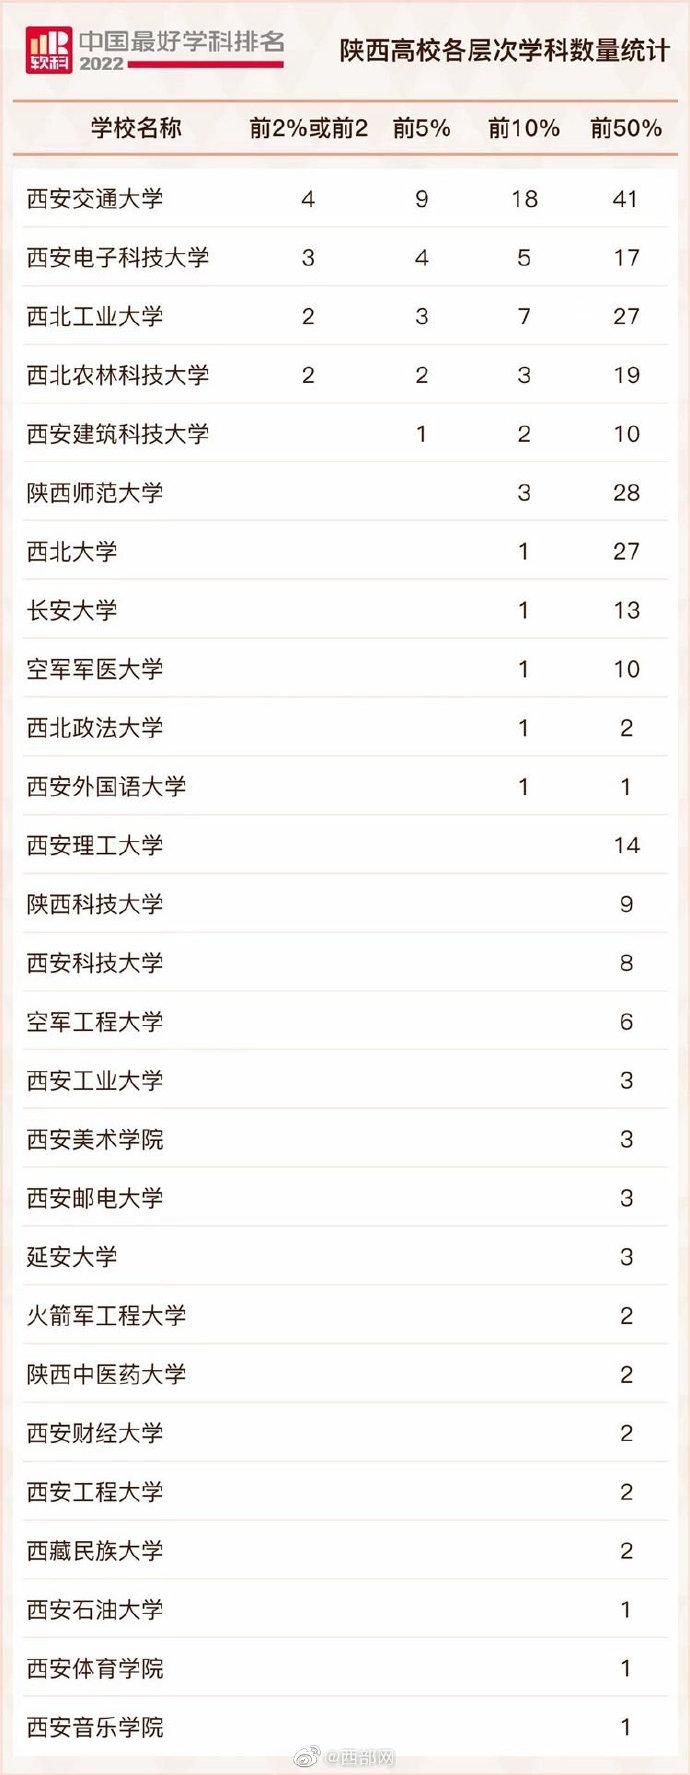 “2022软科中国最好学科排名”发布 陕西高校共上榜257个学科位列全国第7名